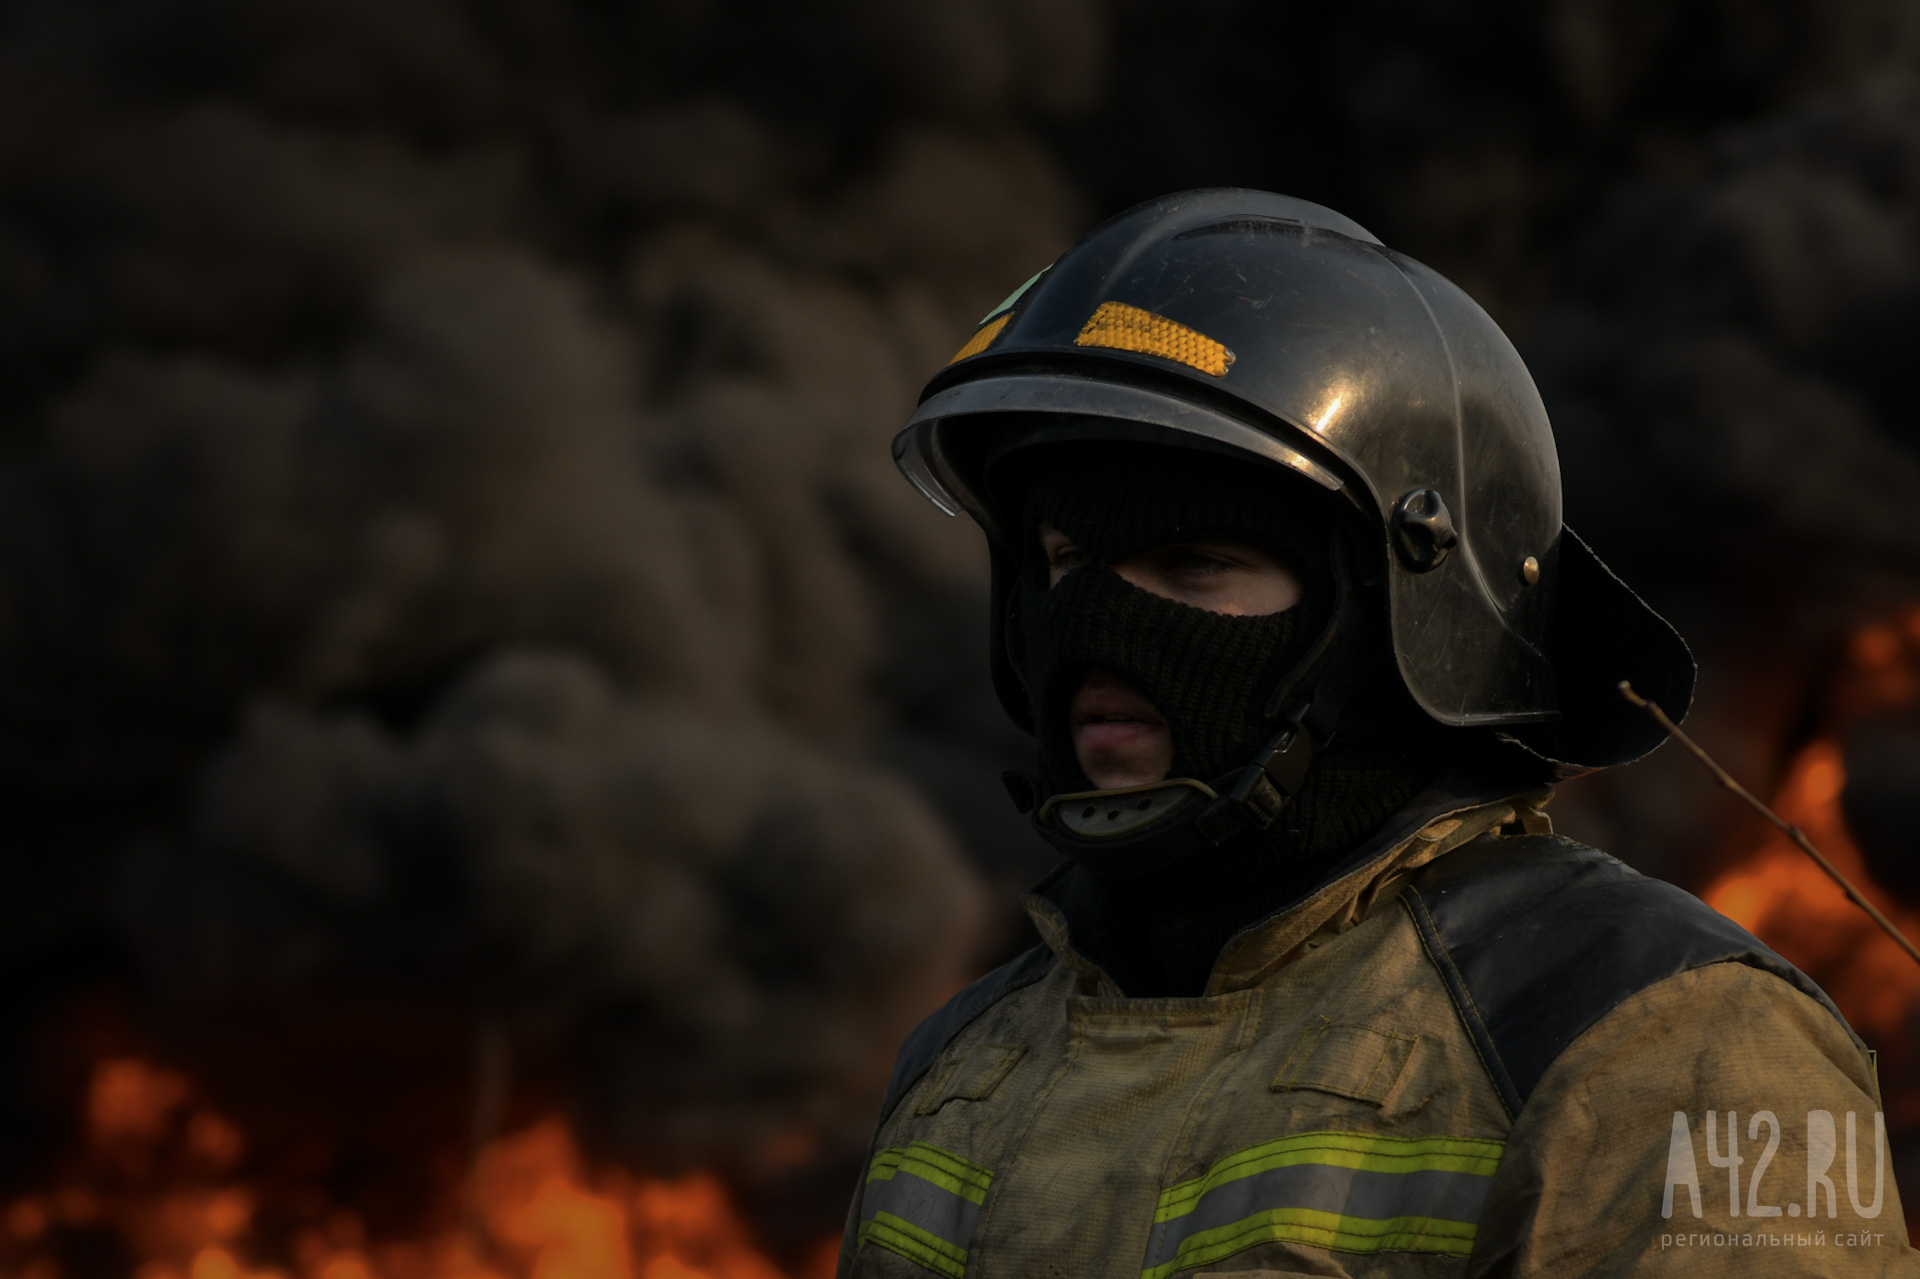 В Кузбассе пожарные 20 минут тушили загоревшийся автомобиль 